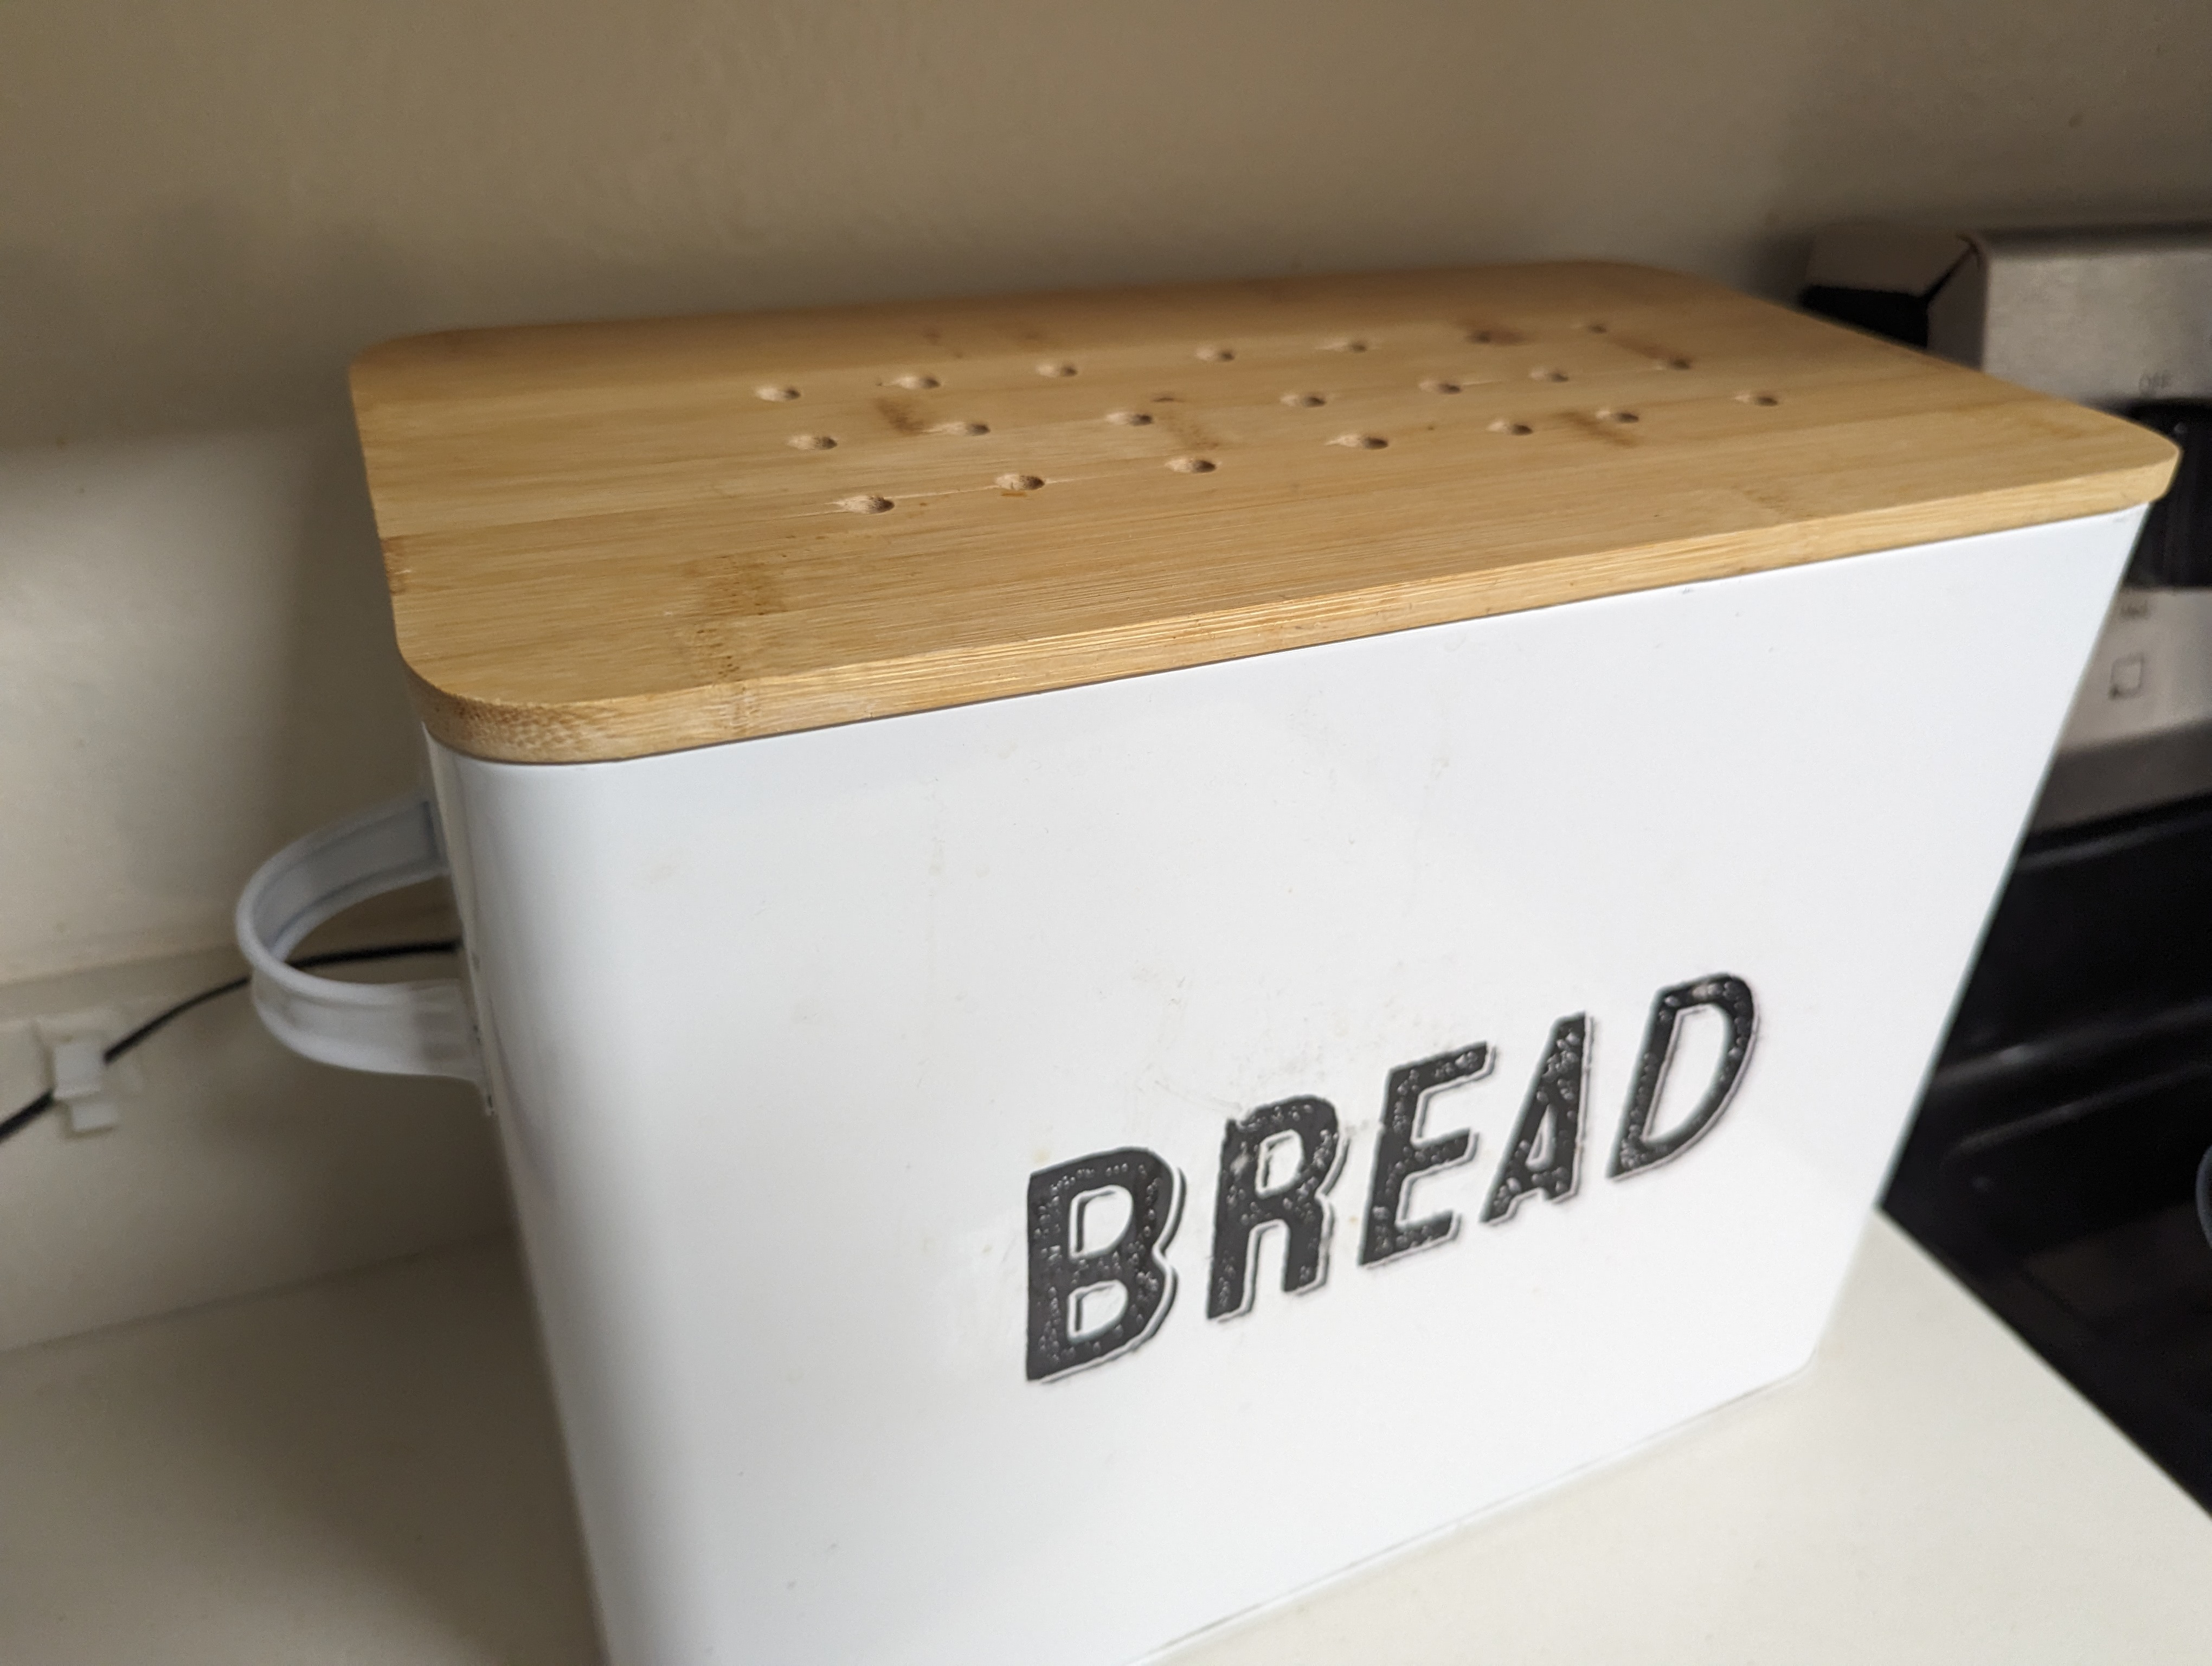 Bread bin showing ventilation holes and fan wire